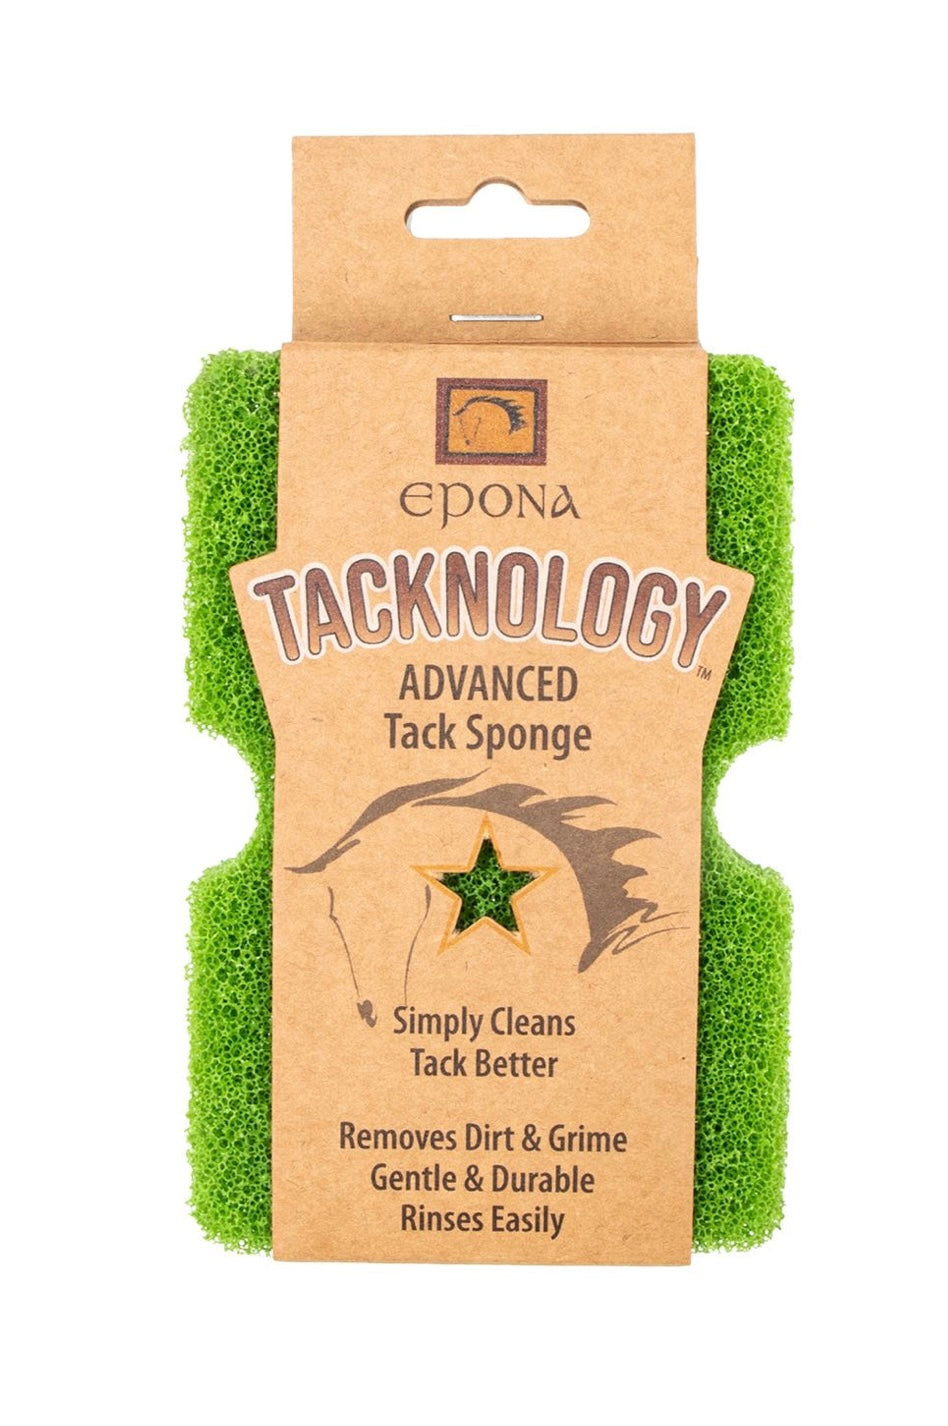 Epona Tacknology advanced Tack Sponge